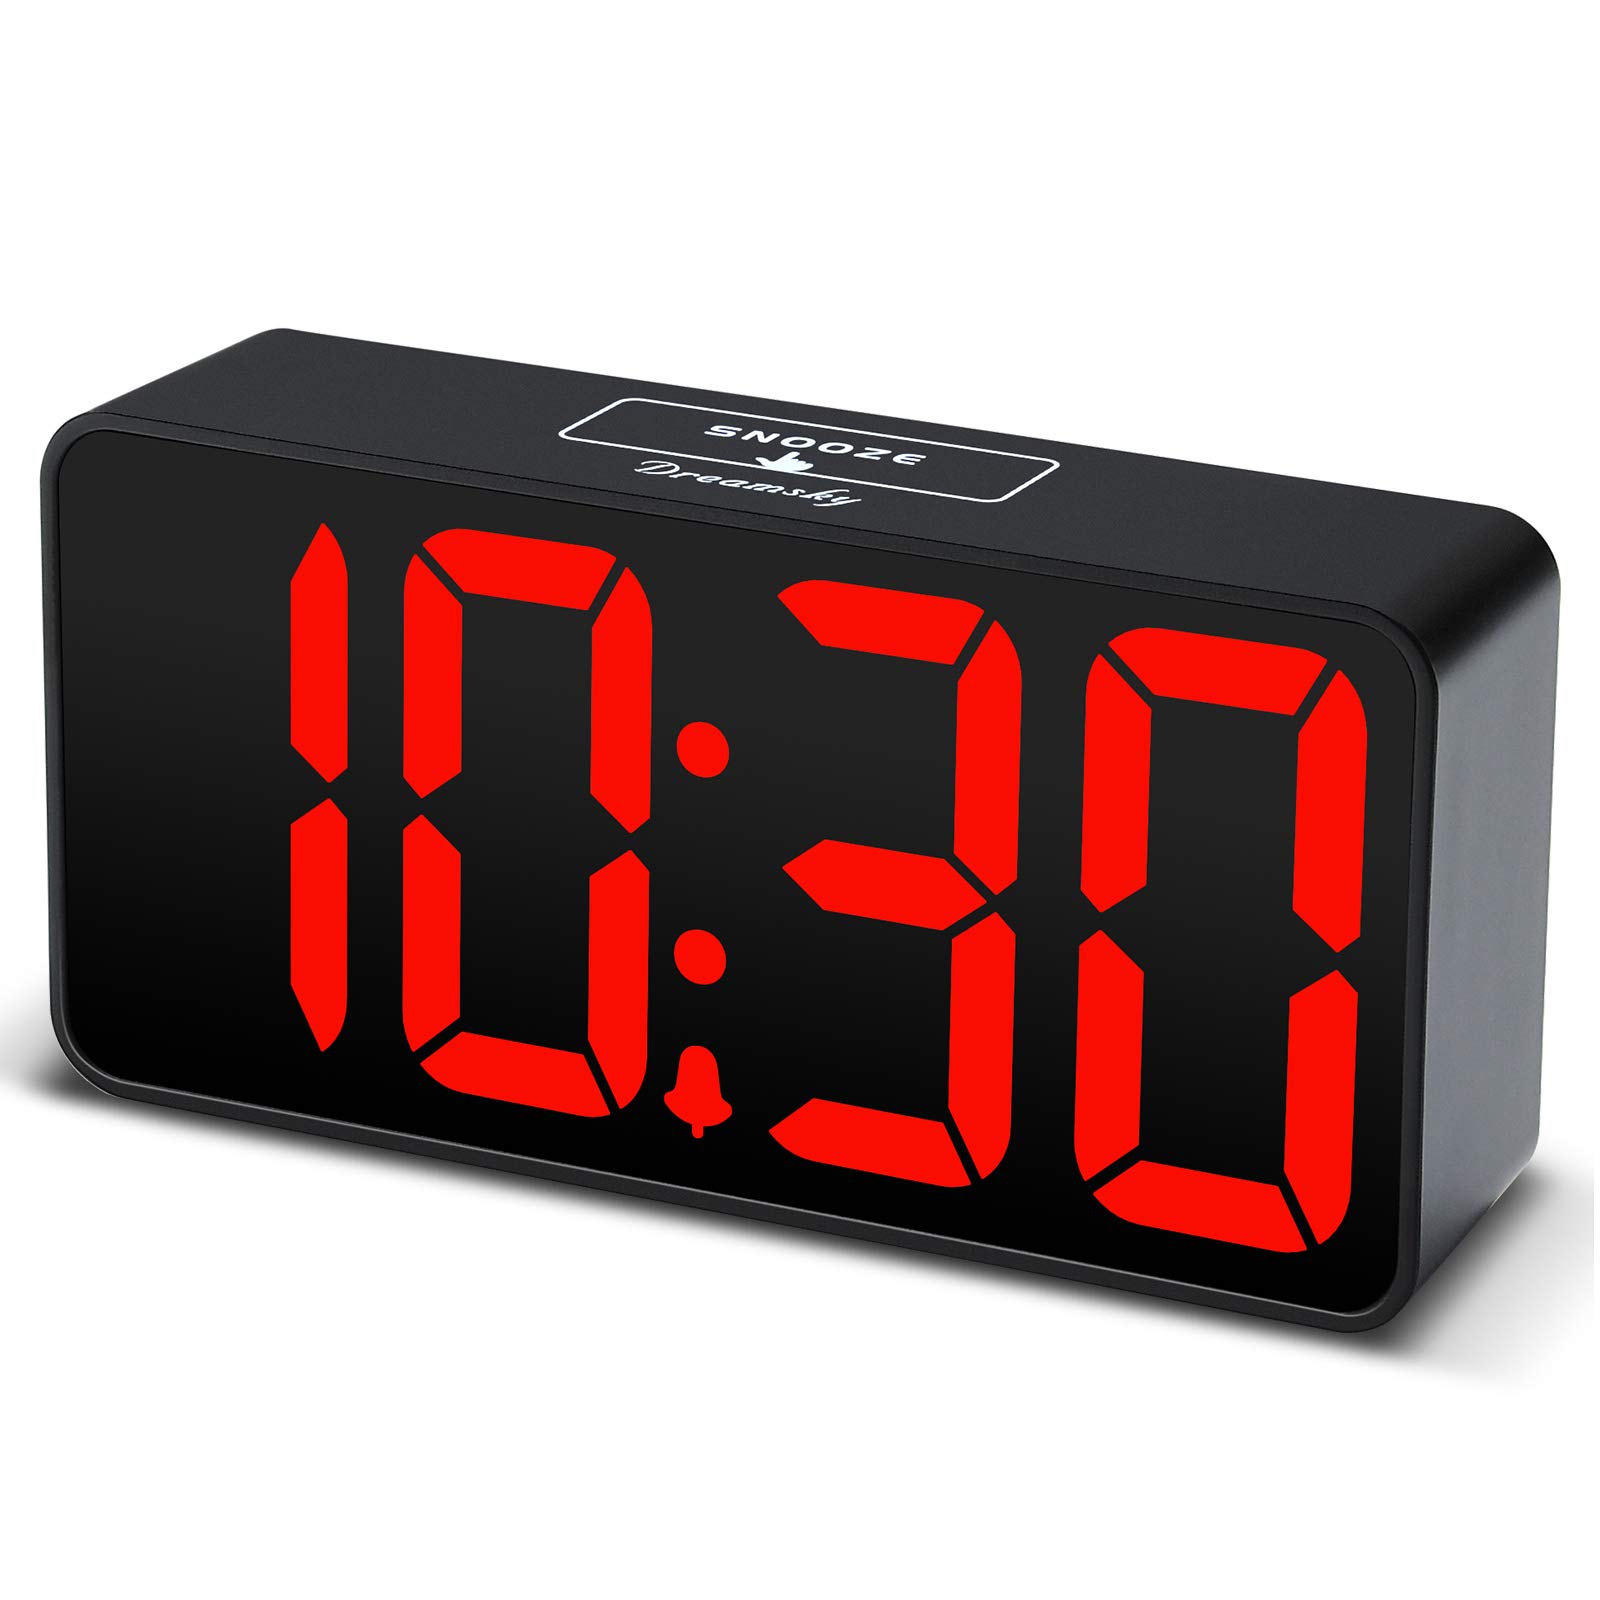 DreamSky Compact Digital Alarm Clock with USB Port